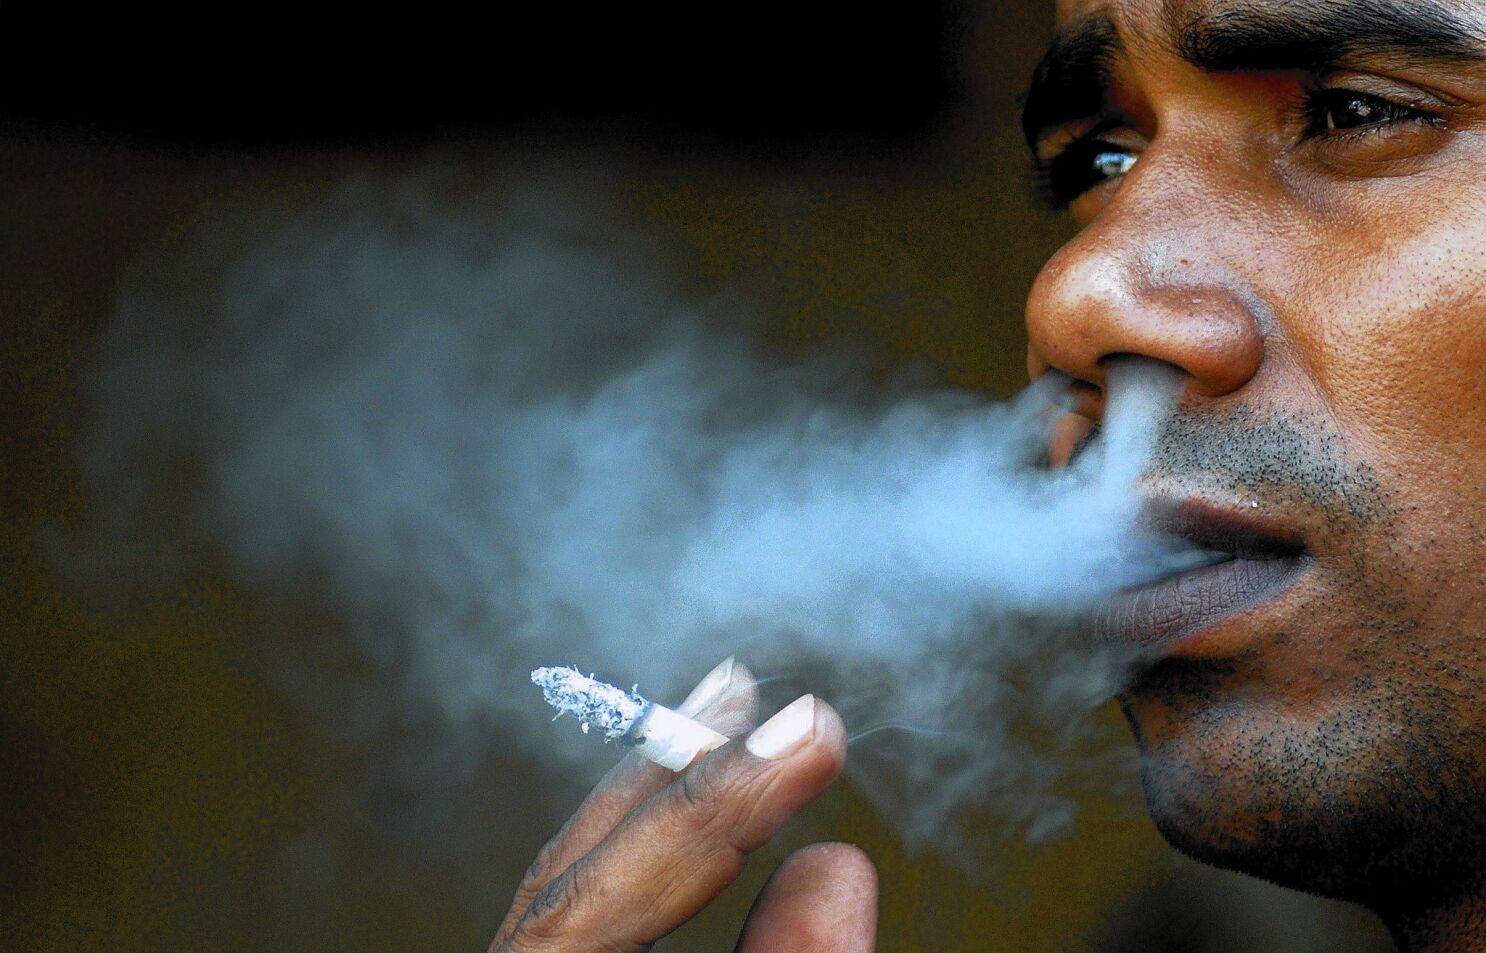 Bemiddelaar Zich verzetten tegen opblijven The global grip of cigarette smoking - Los Angeles Times